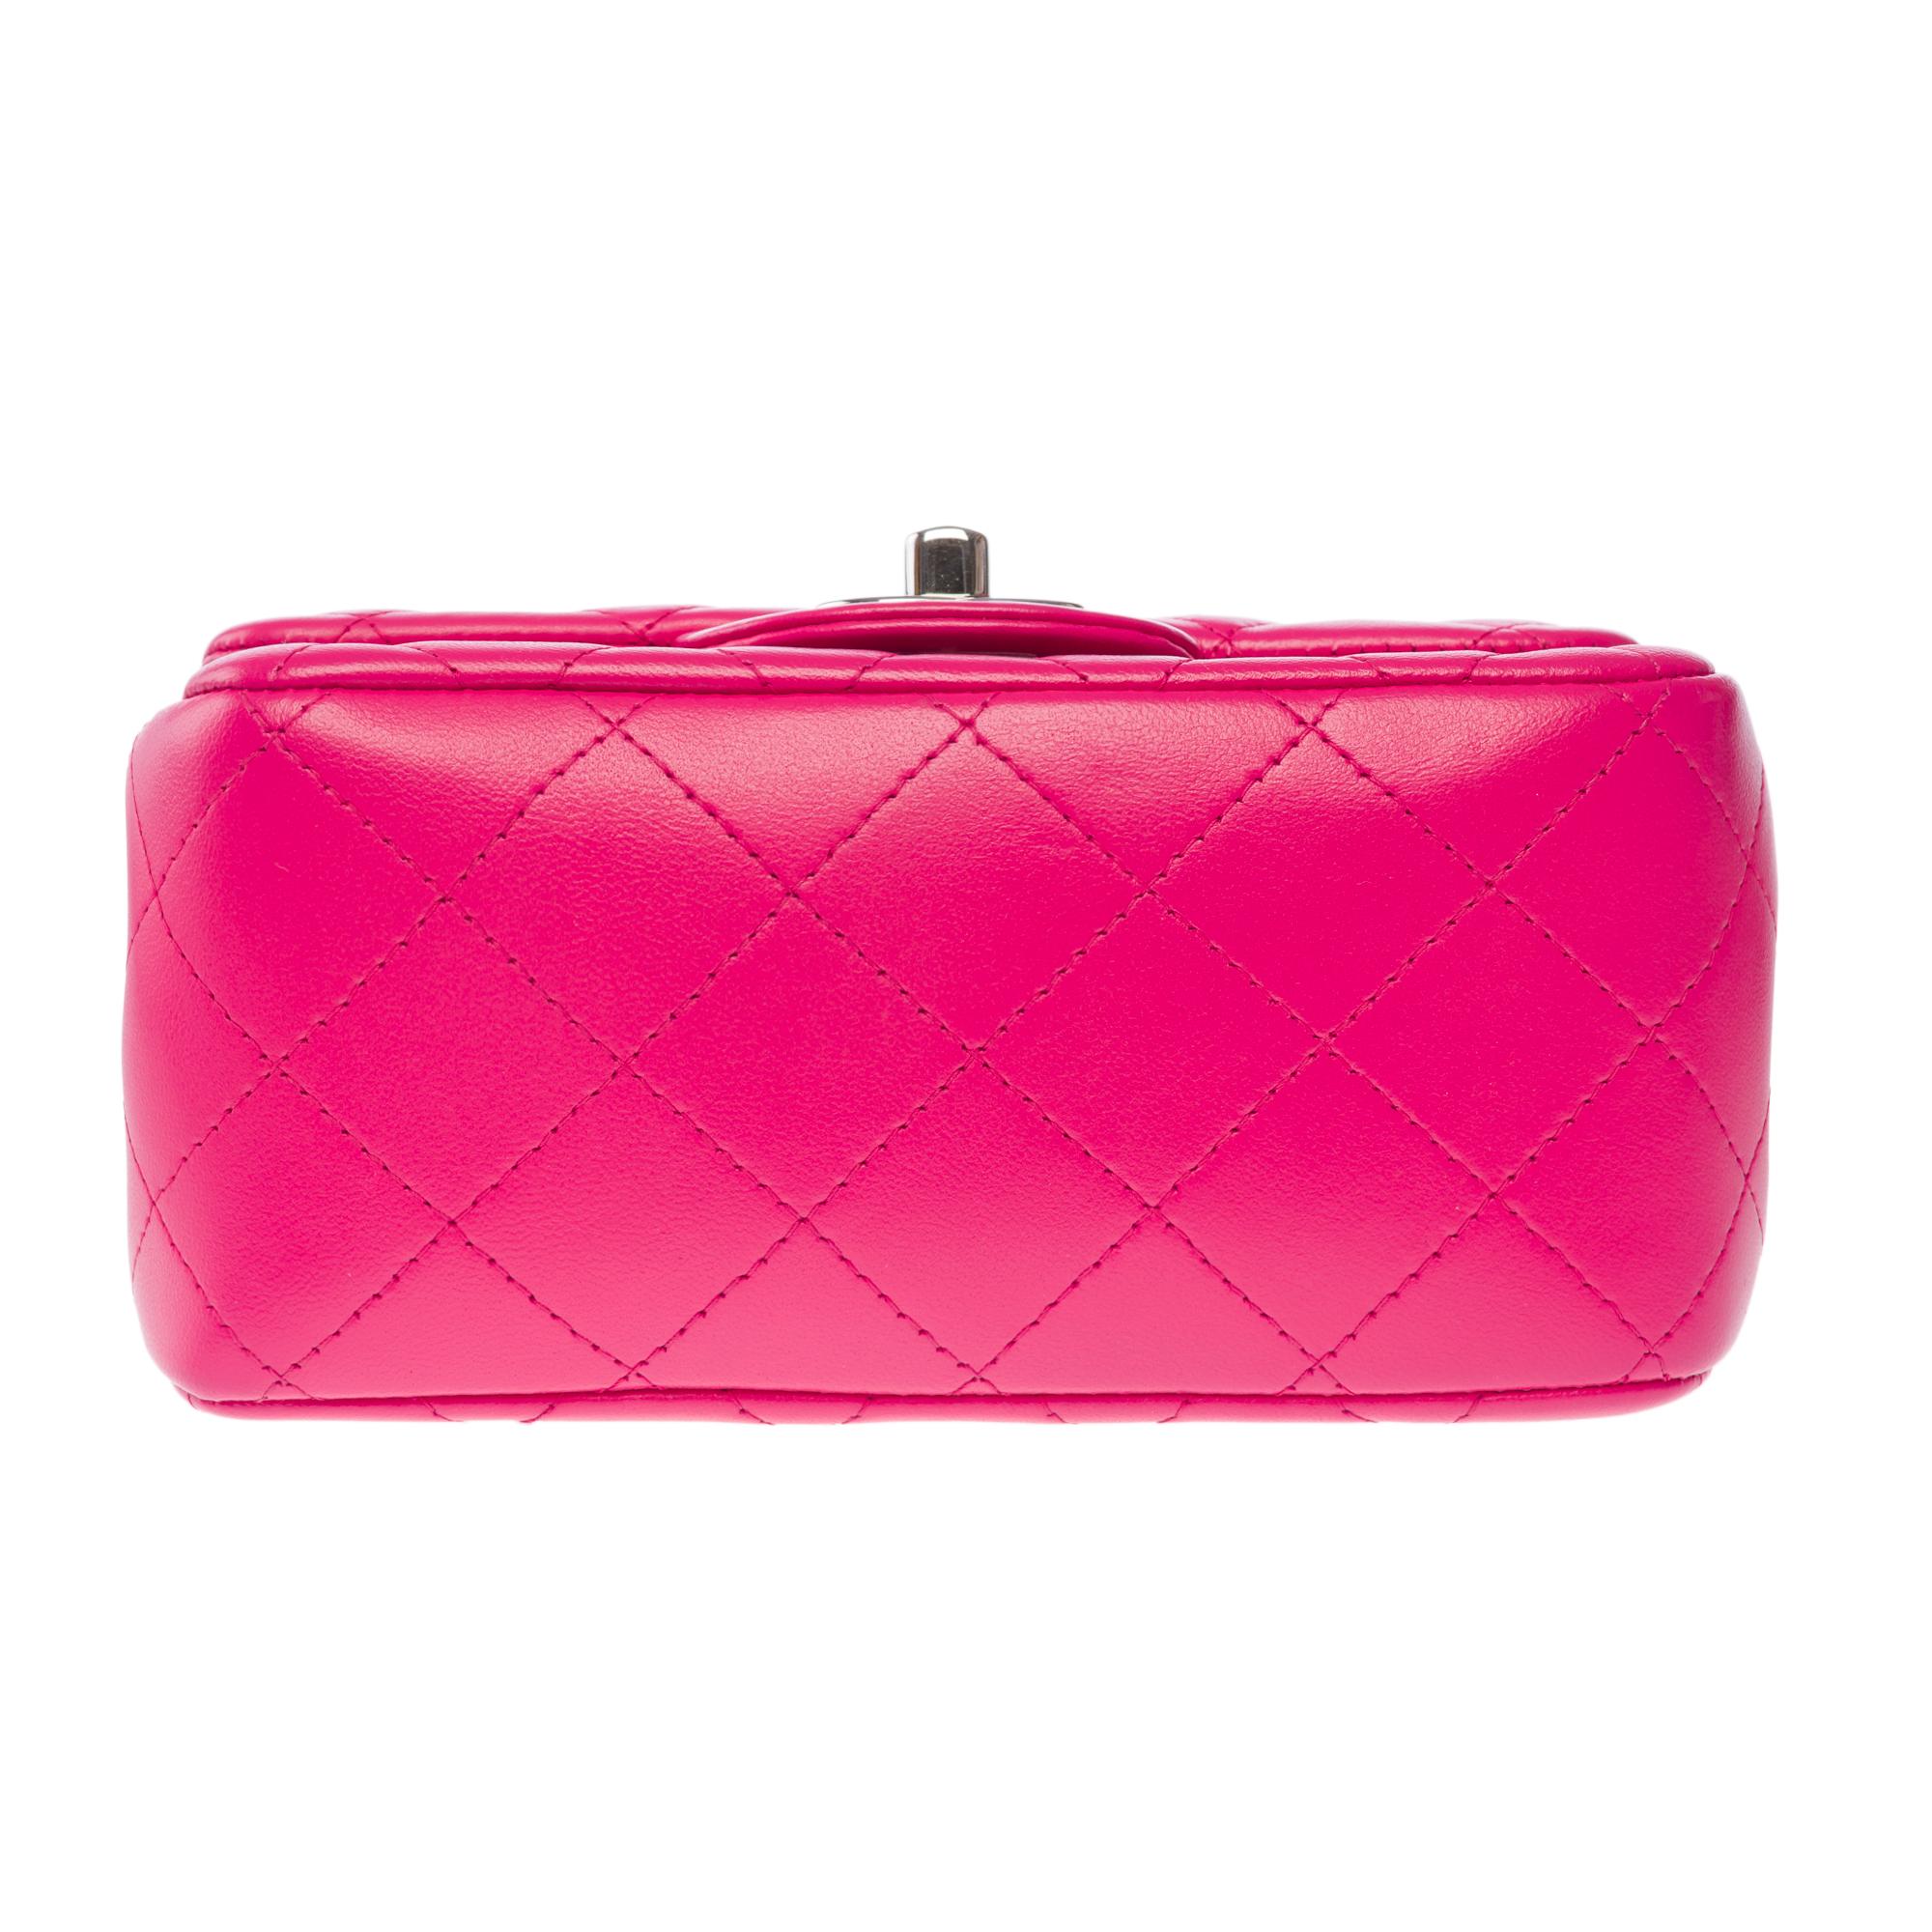 Magnifique sac à bandoulière Mini Timeless de Chanel en cuir matelassé rose, SHW 6